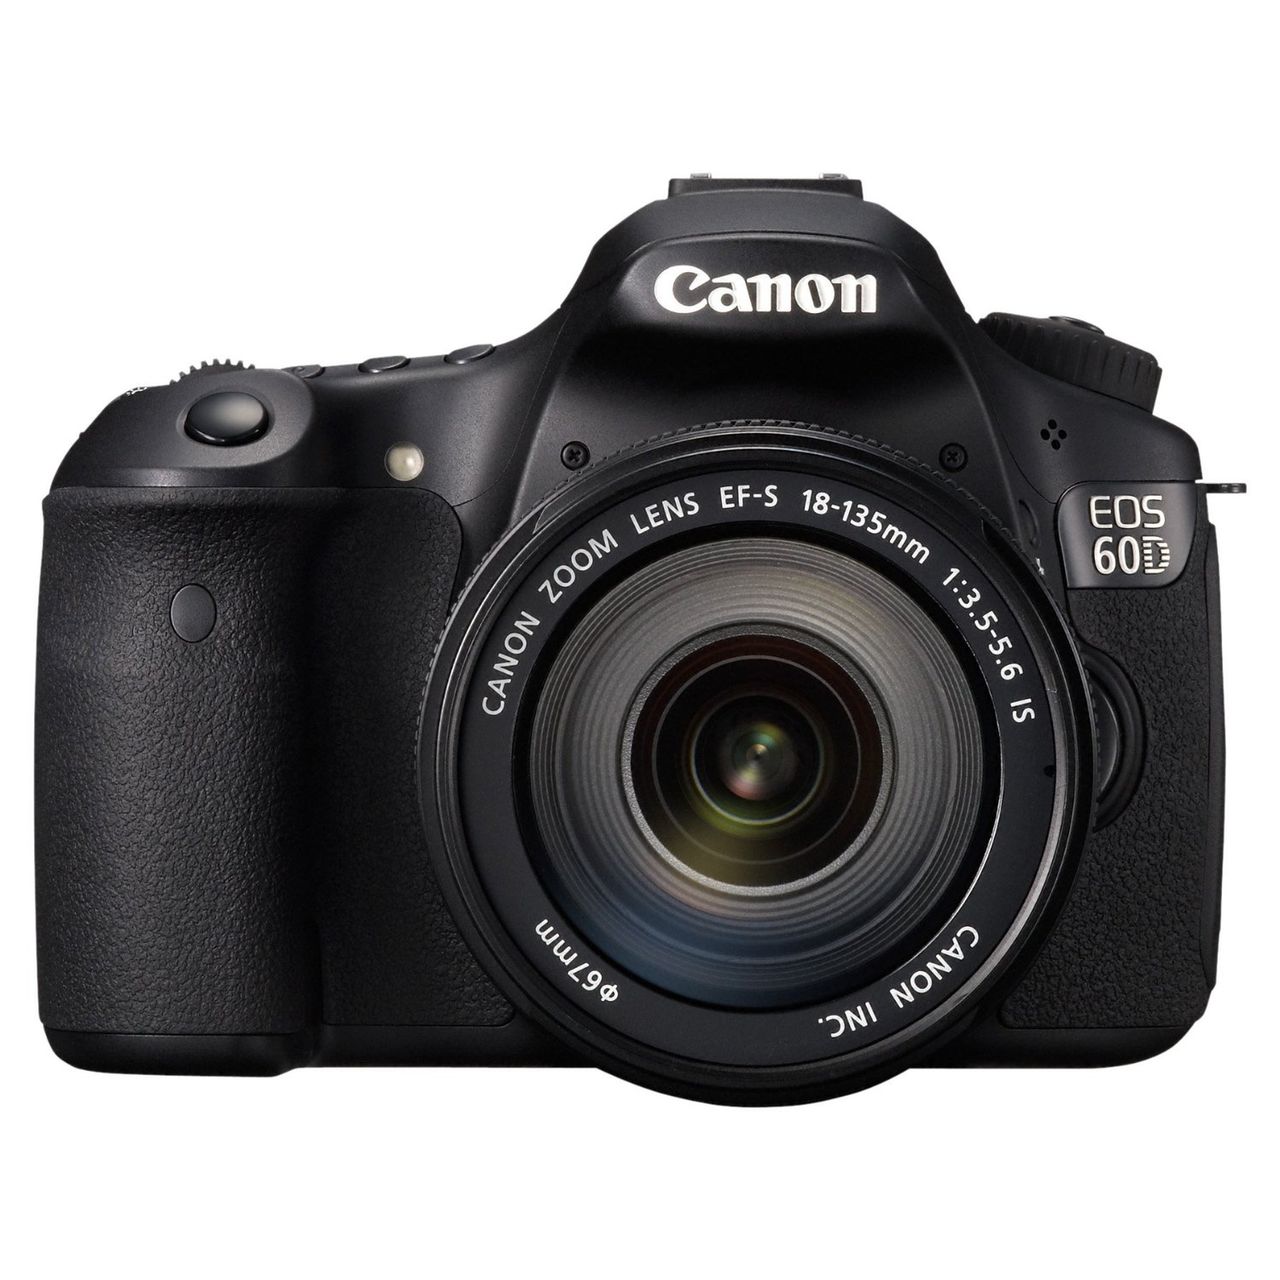 Canon EOS 60D ma 19 punktów krzyżowych